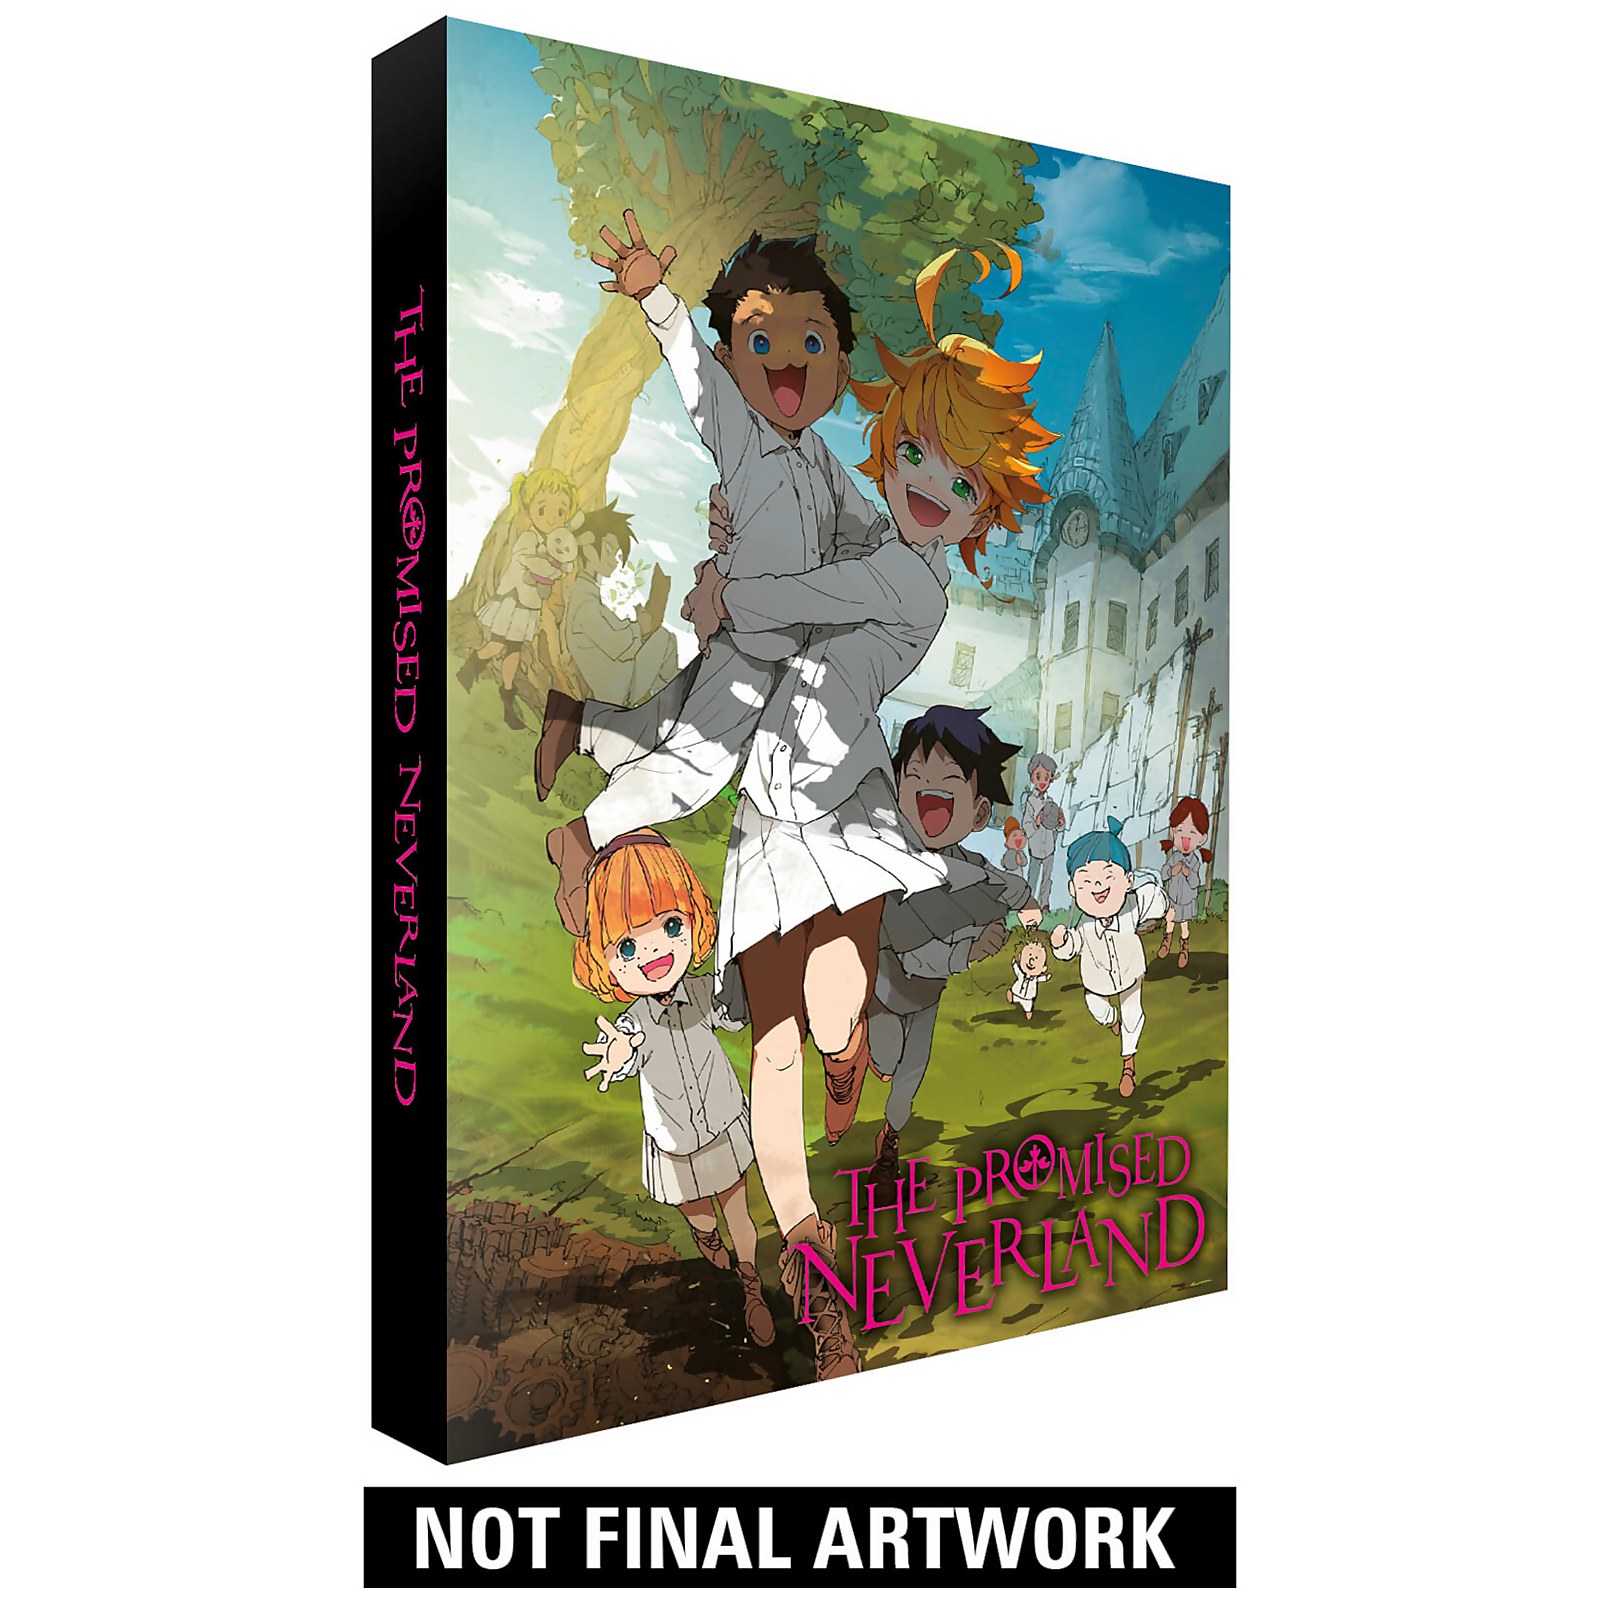 Das versprochene Nimmerland - Collector's Edition von All The Anime